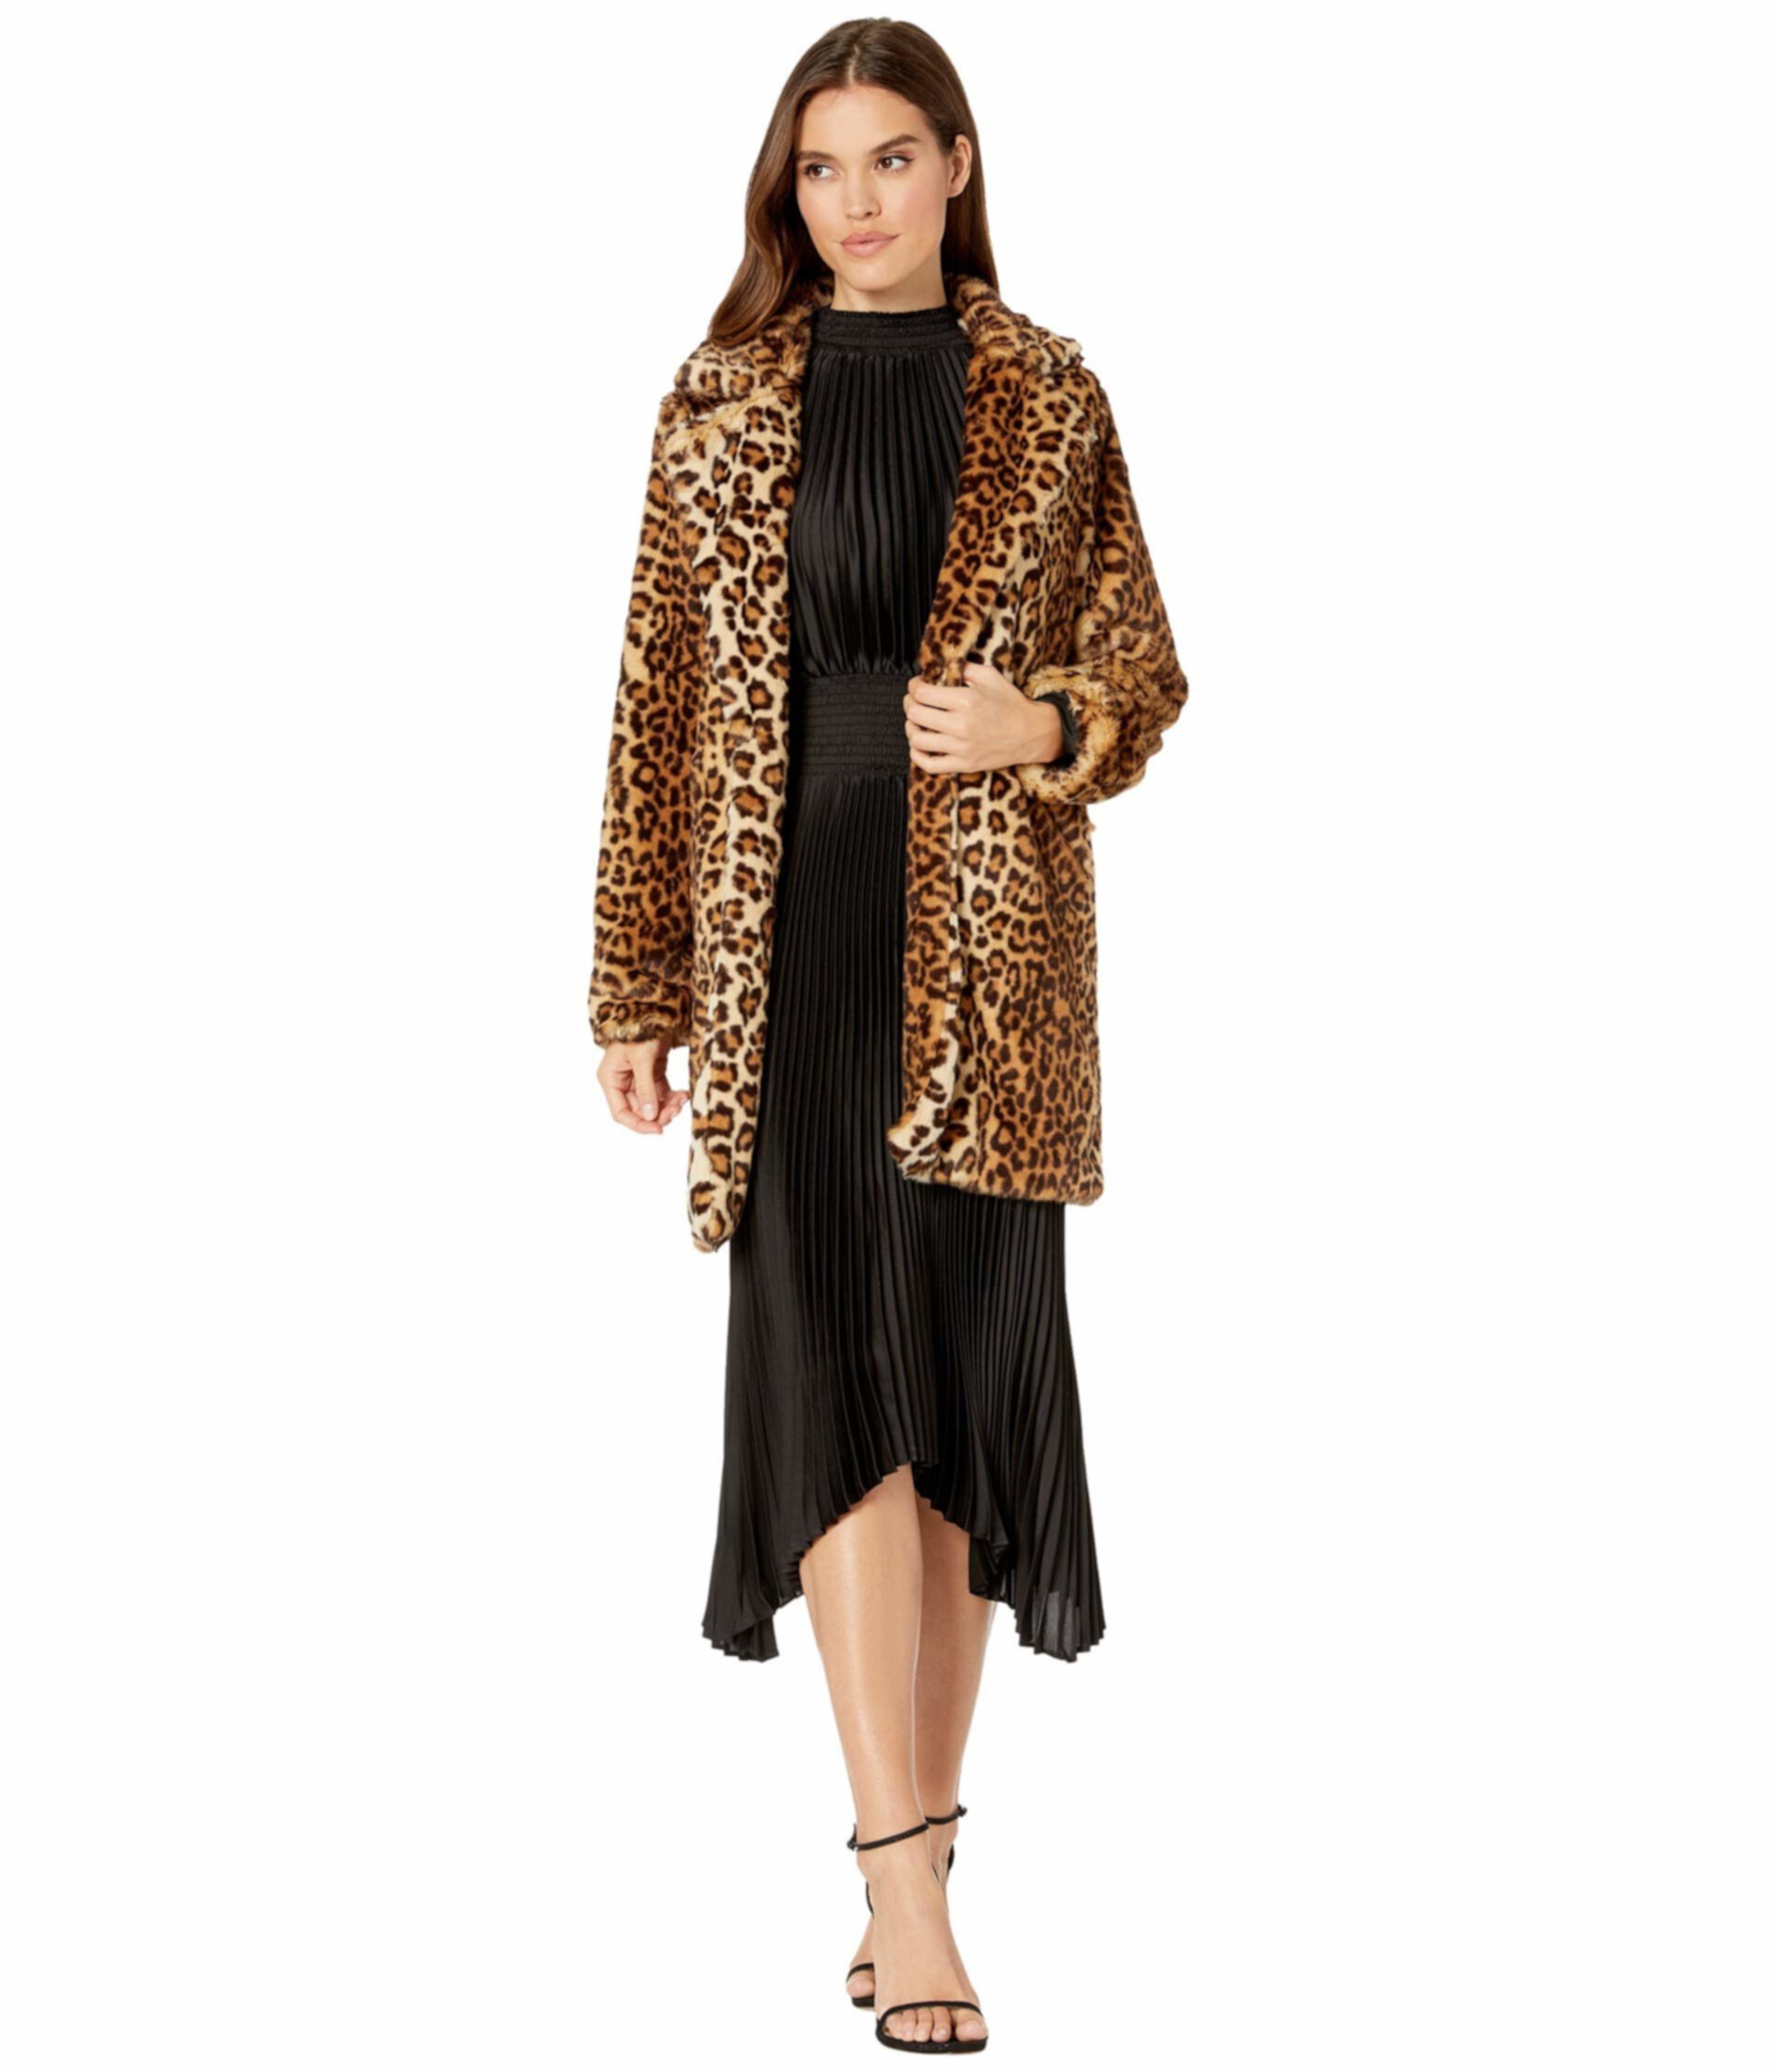 Пальто из искусственного меха леопарда в записке для себя Blank NYC